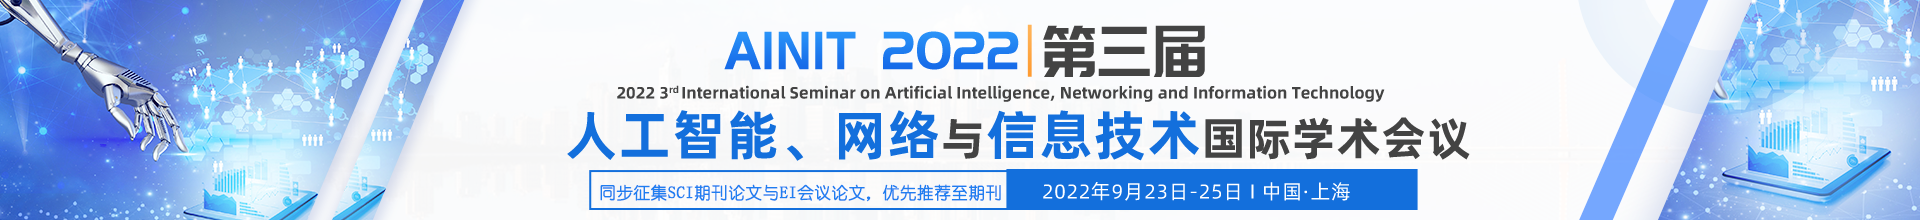 9月上海-AINIT 2022-学术会议云PC端（上线平台）-陈军-20220310（含期刊).png